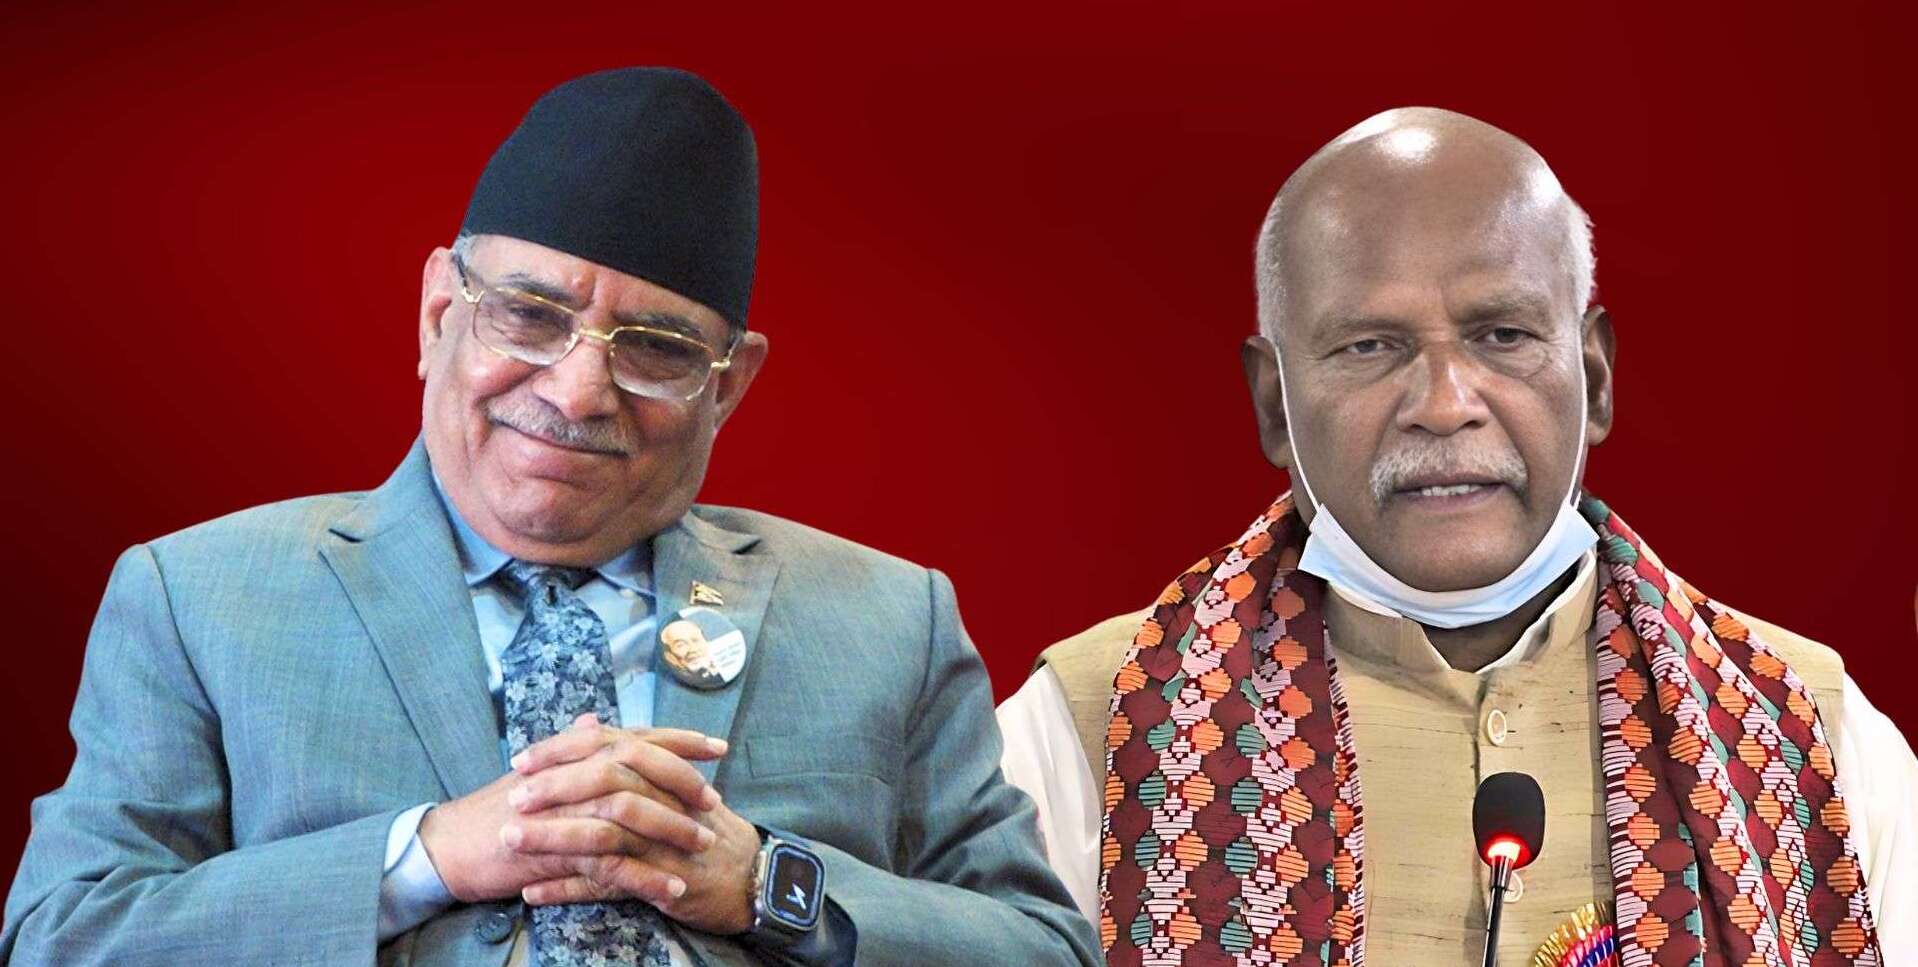 माओवादी केन्द्र र नेपाल समाजवादी महिन्द्र राय पक्षबिचमा पार्टी एकता सहमती